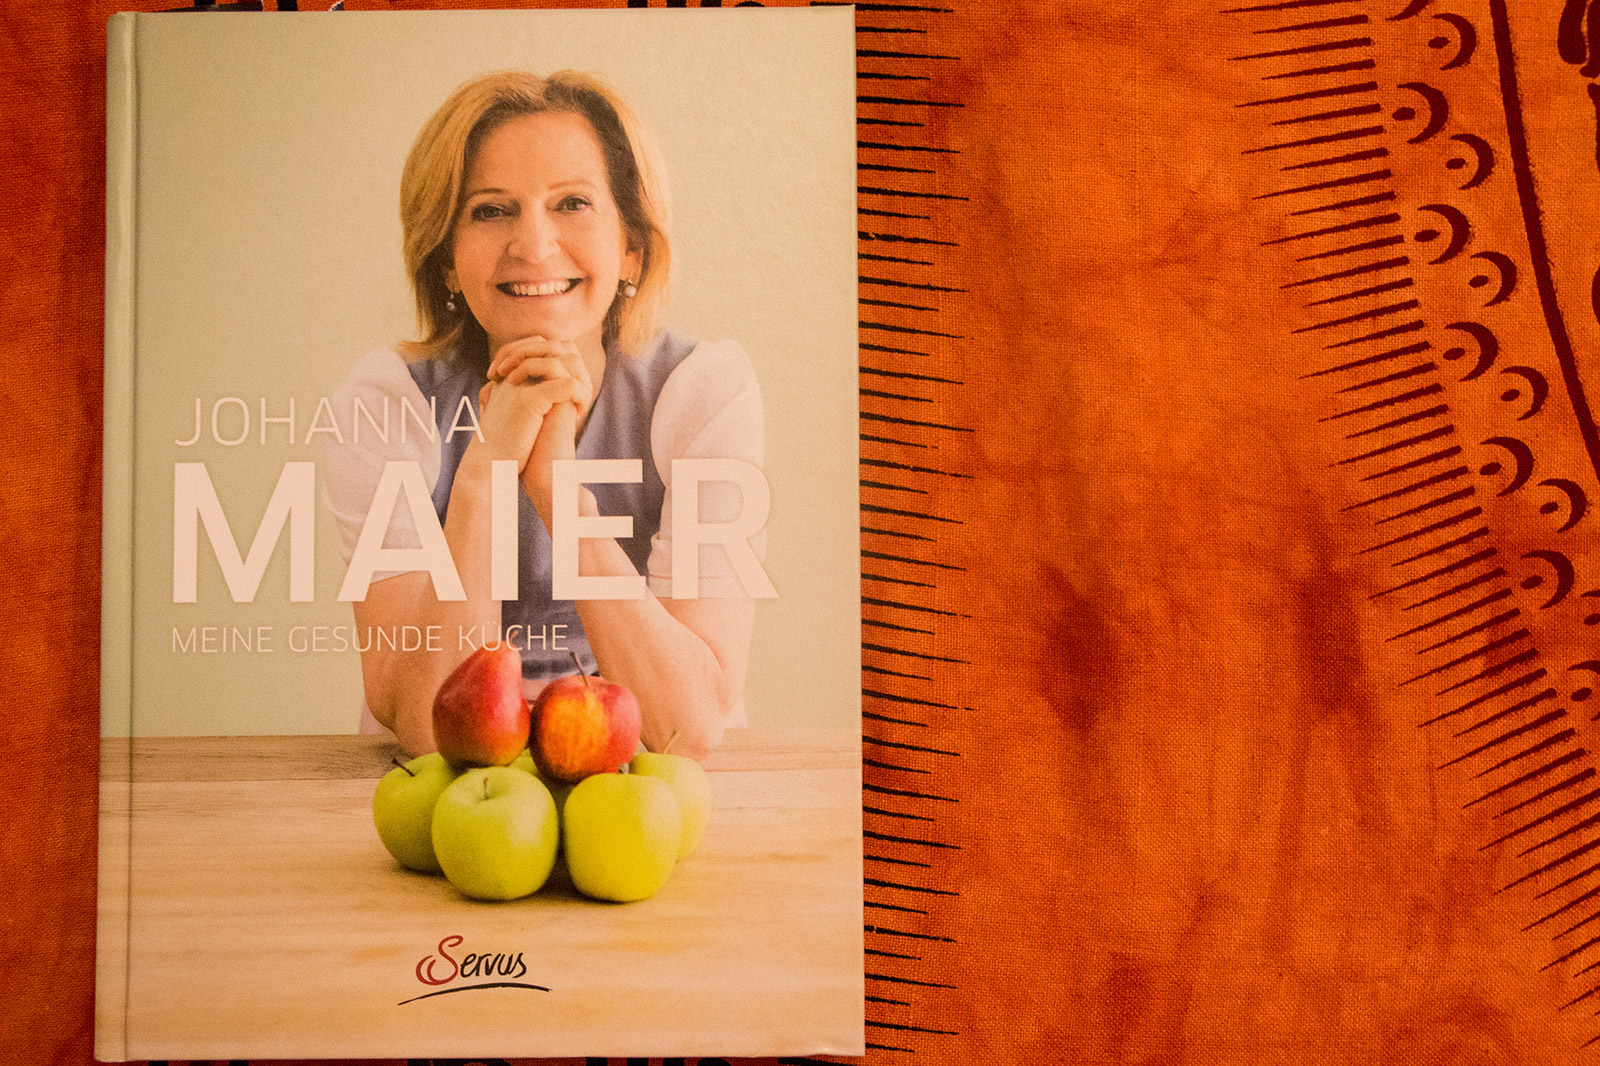 Johanna Maier – Meine gesunde Küche